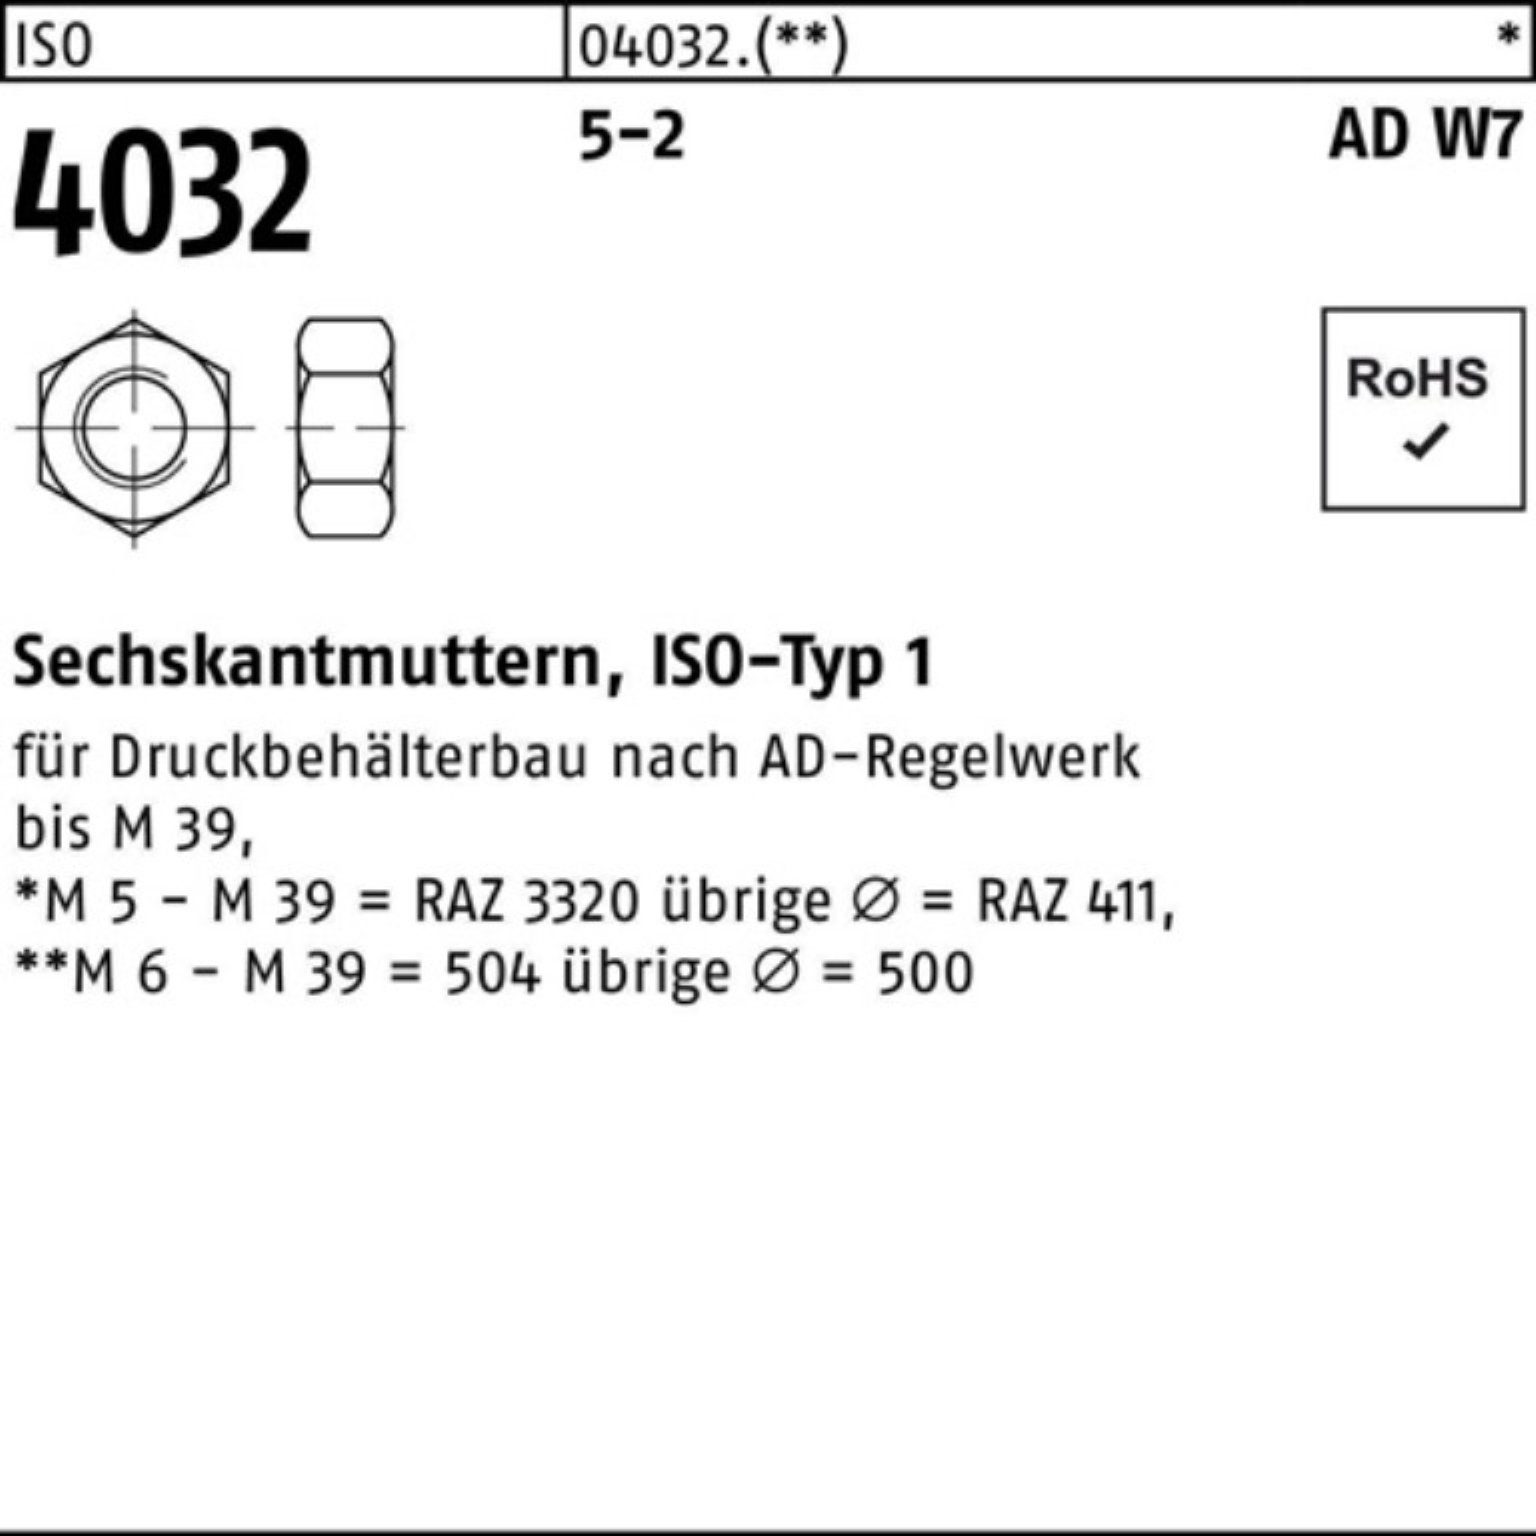 Bufab Muttern 100er Pack Sechskantmutter ISO 4032 M39 5-2 AD W7 5 Stück ISO 4032 5-